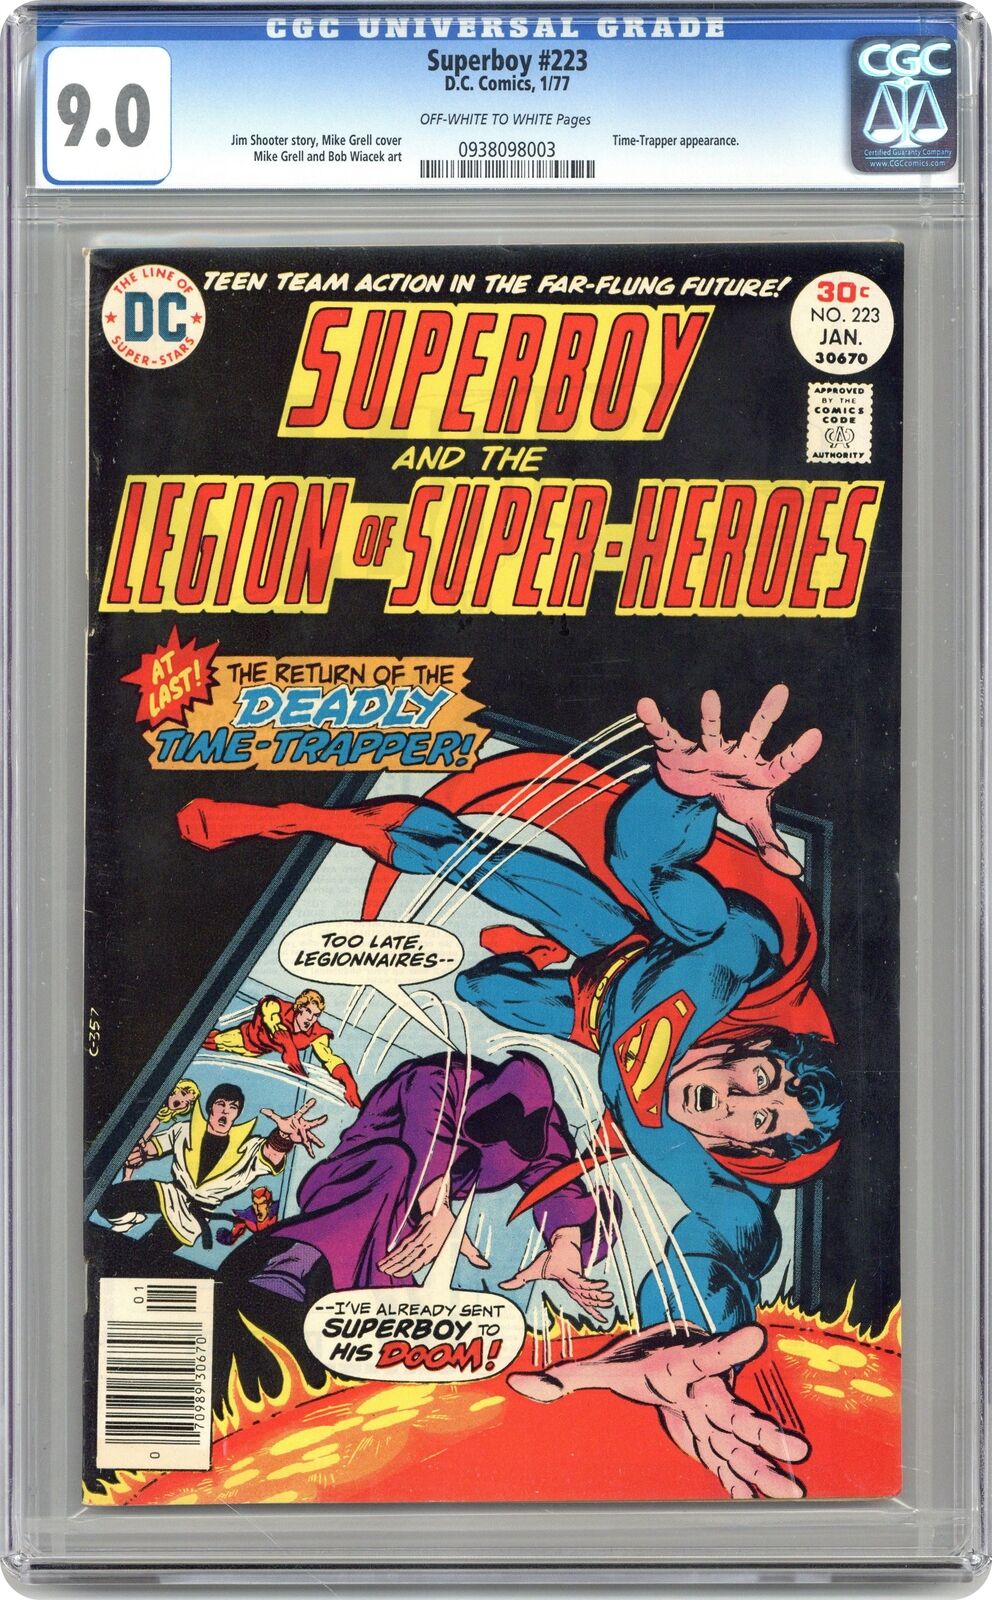 Superboy #223 CGC 9.0 1977 0938098003